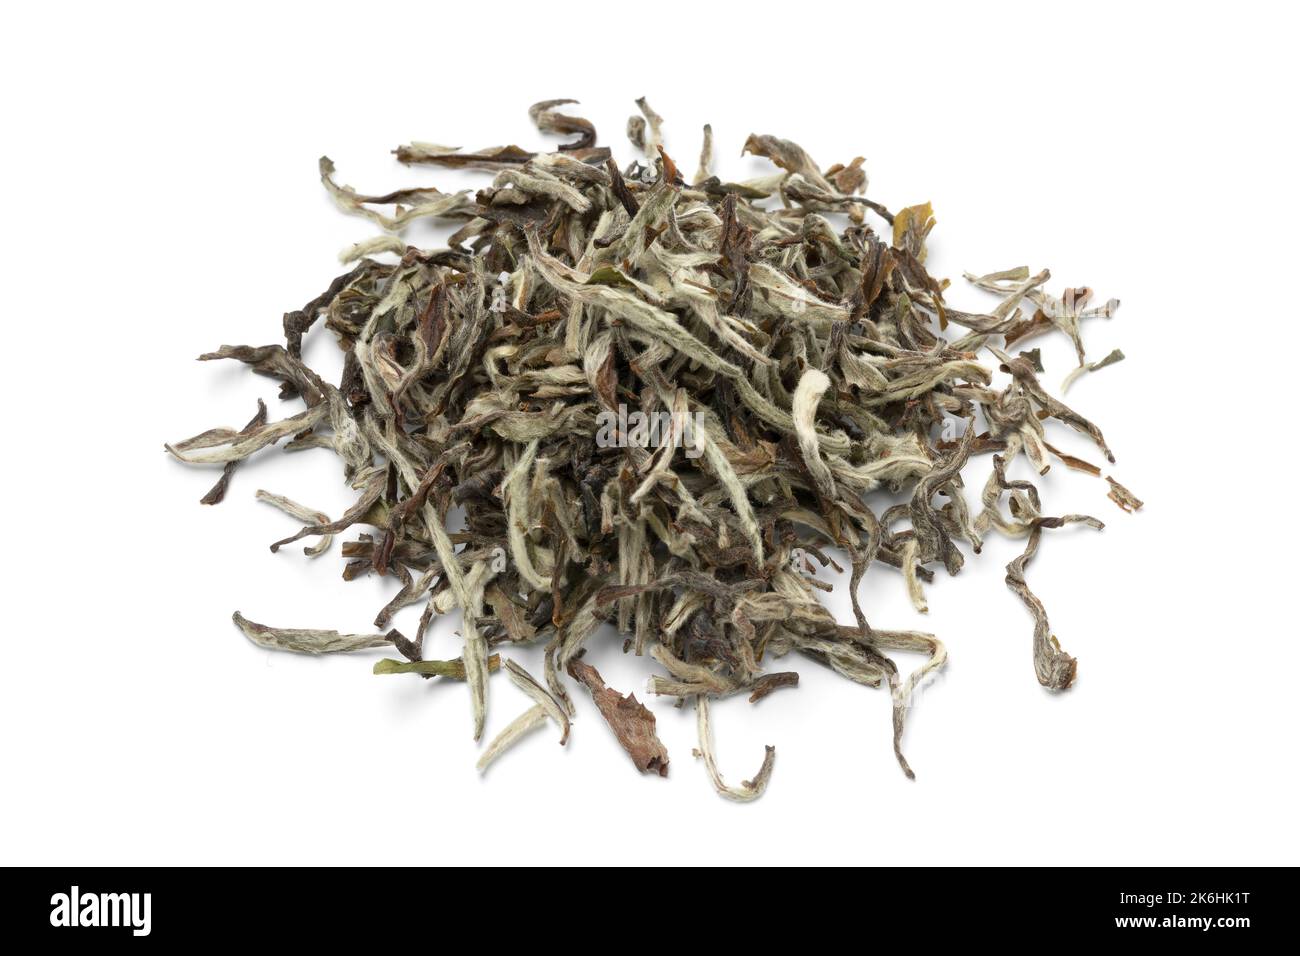 Tas de feuilles de thé népalaises séchées à l'orange blanc, isolées sur fond blanc Banque D'Images